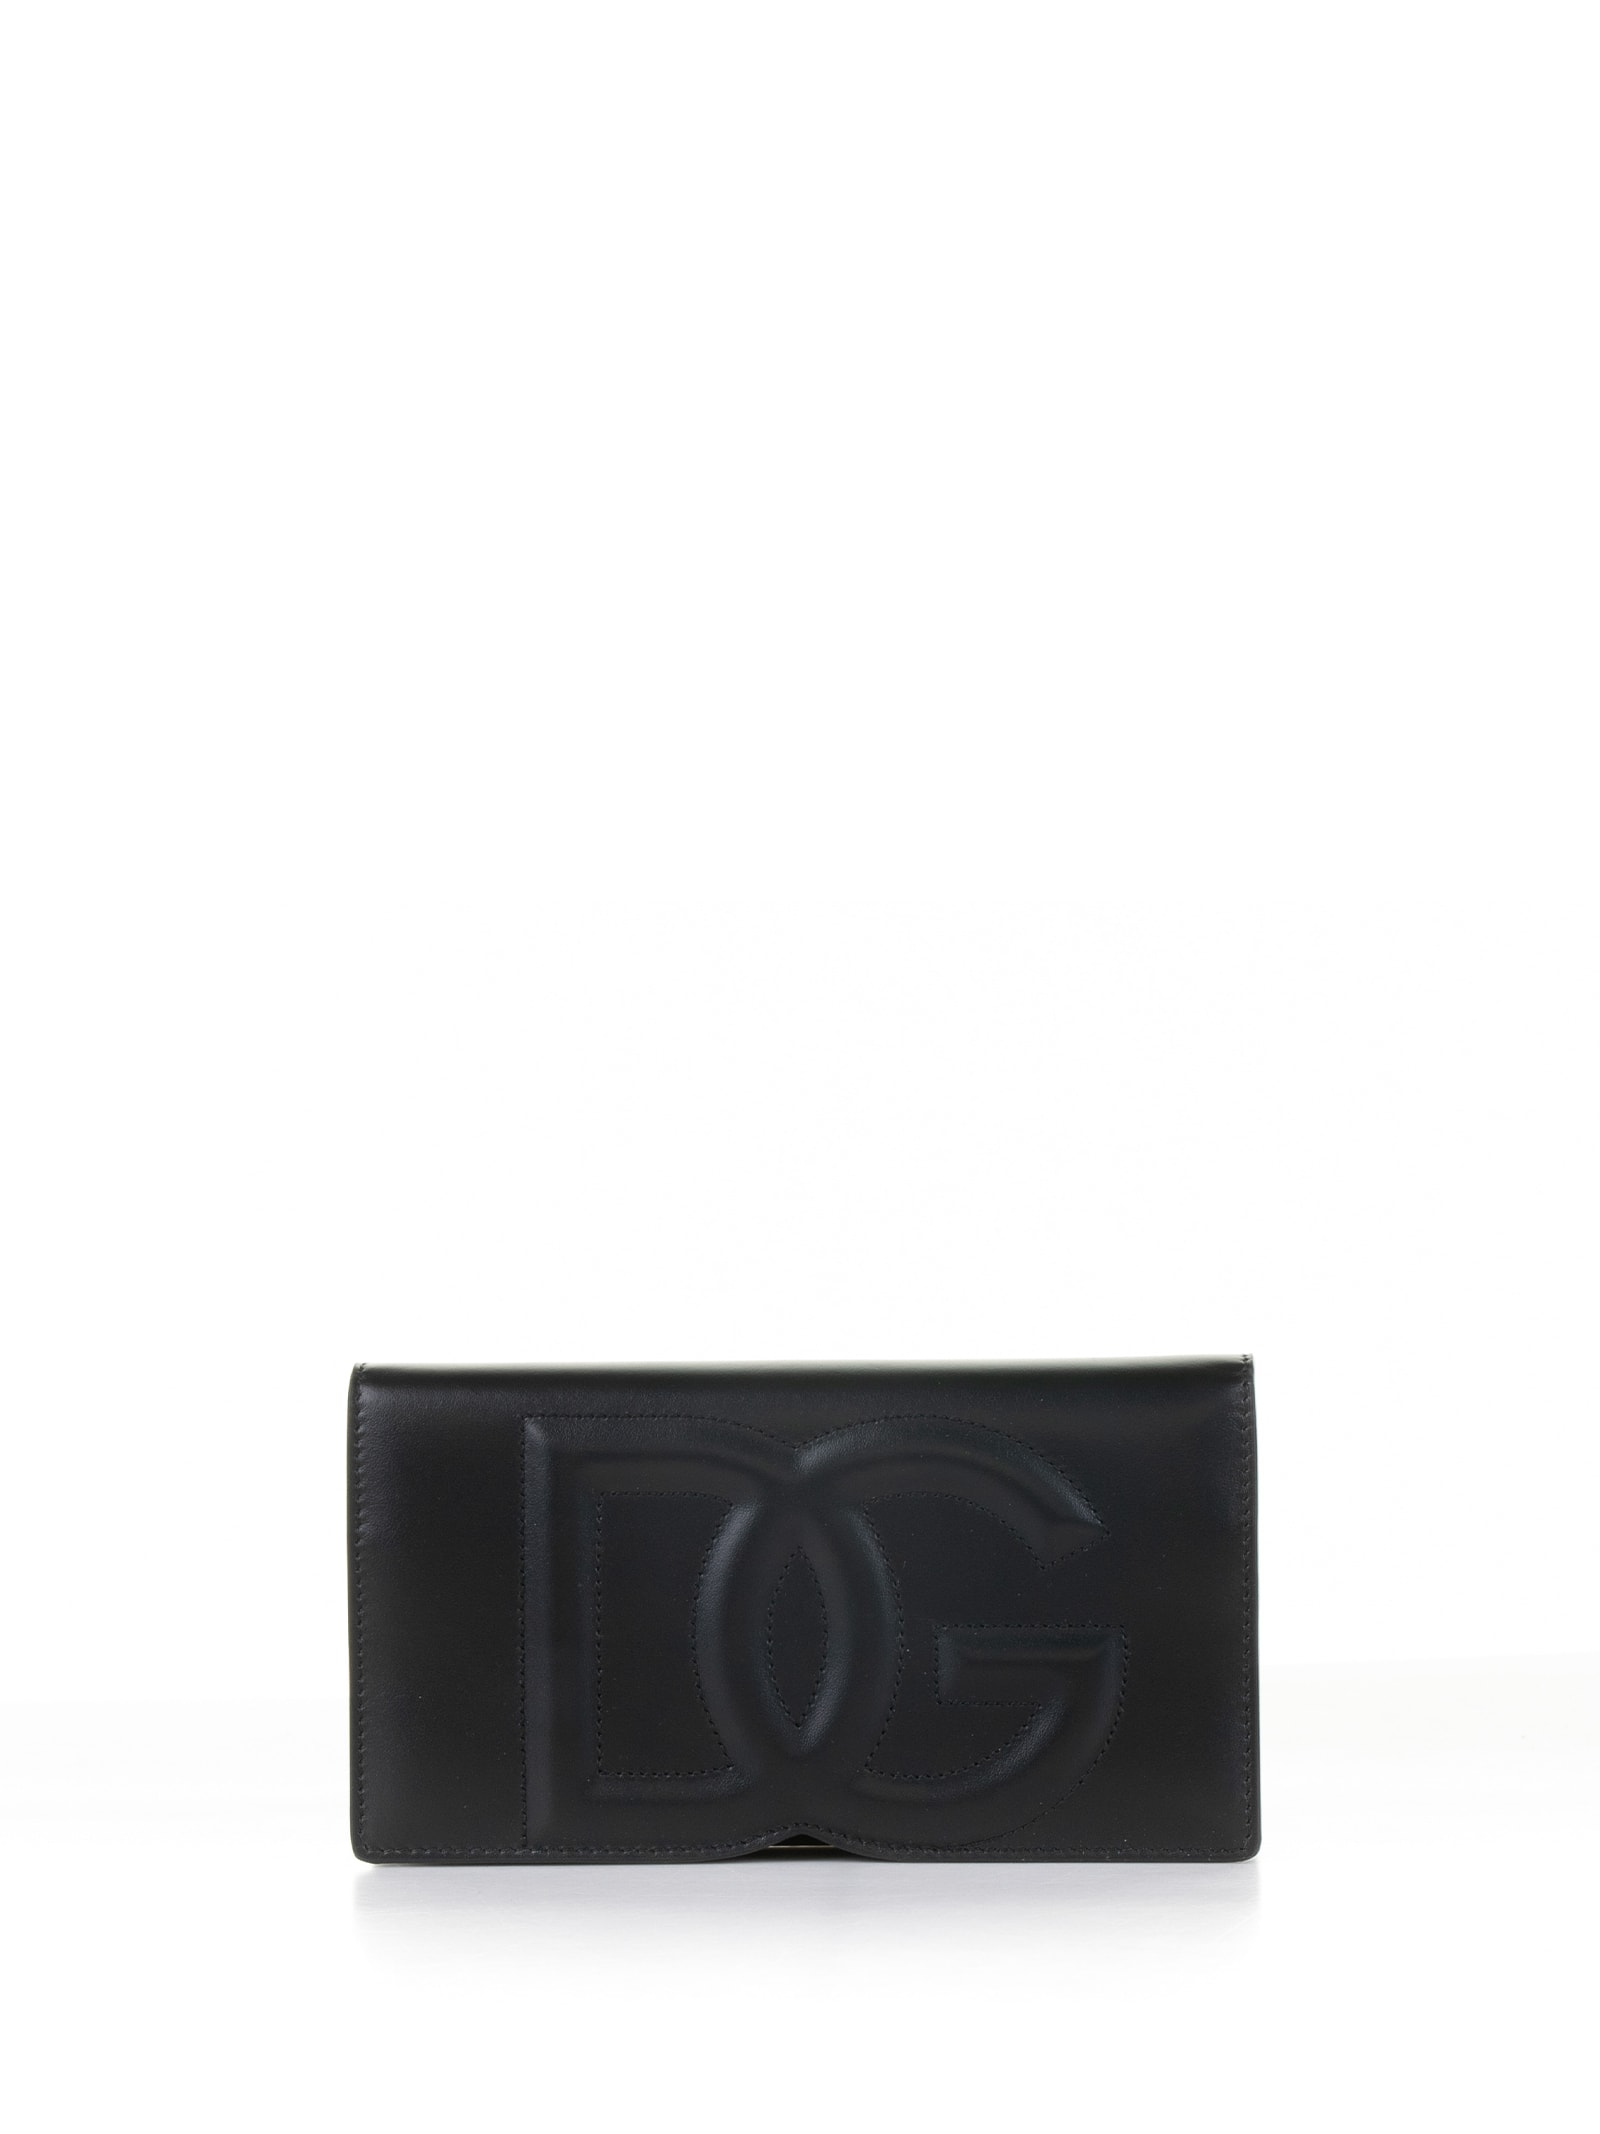 Dolce & Gabbana Dg Mini Cross-body Bag In Nero